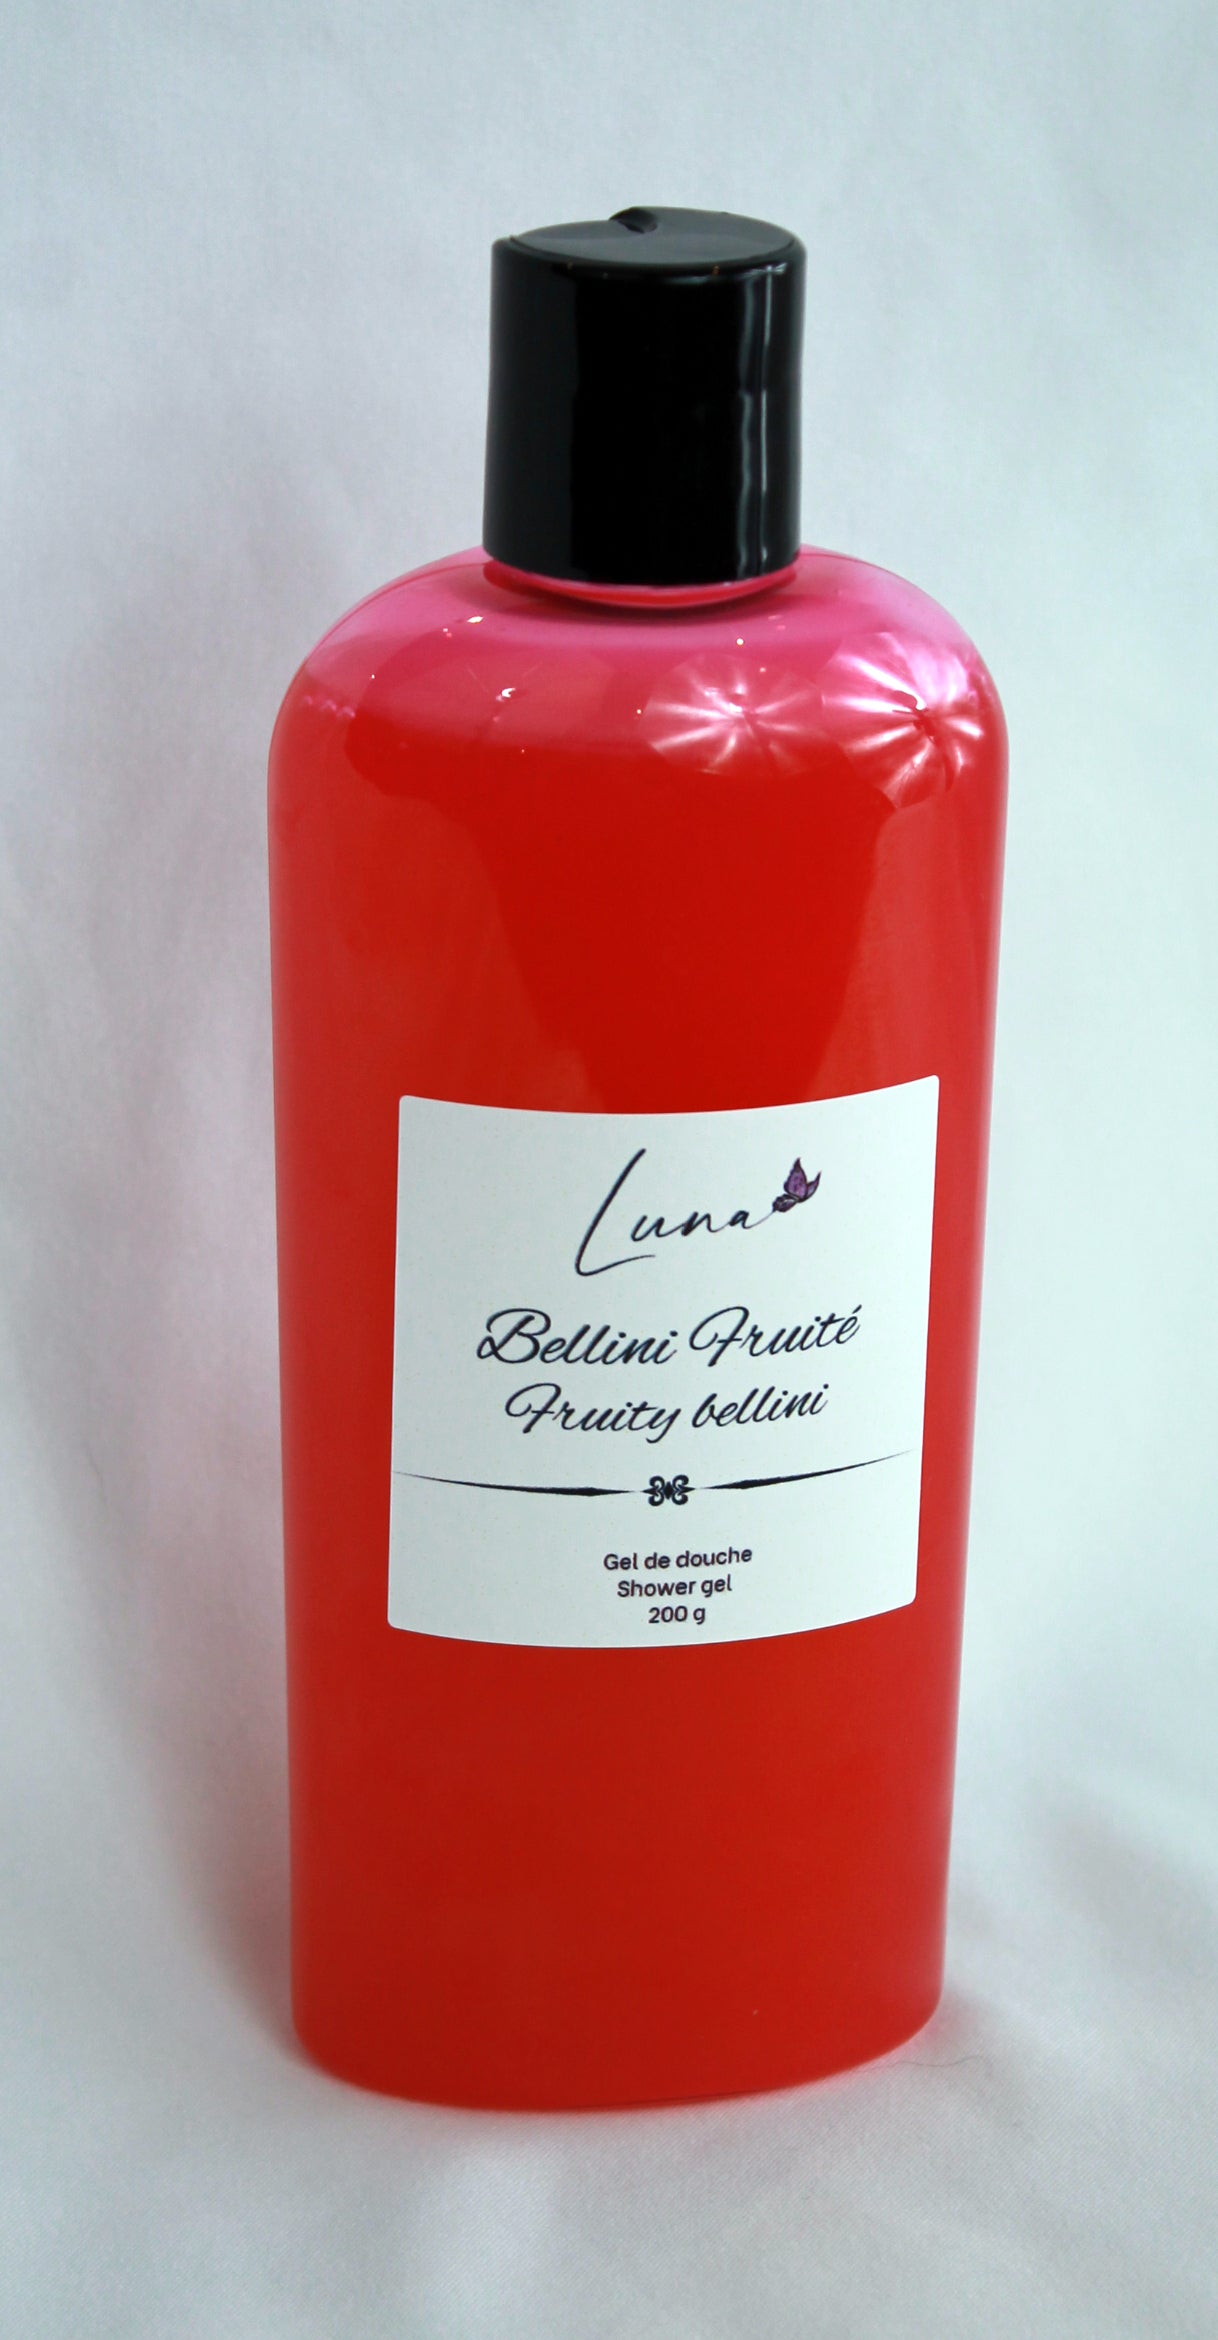 Bellini Fruity - Shower gel